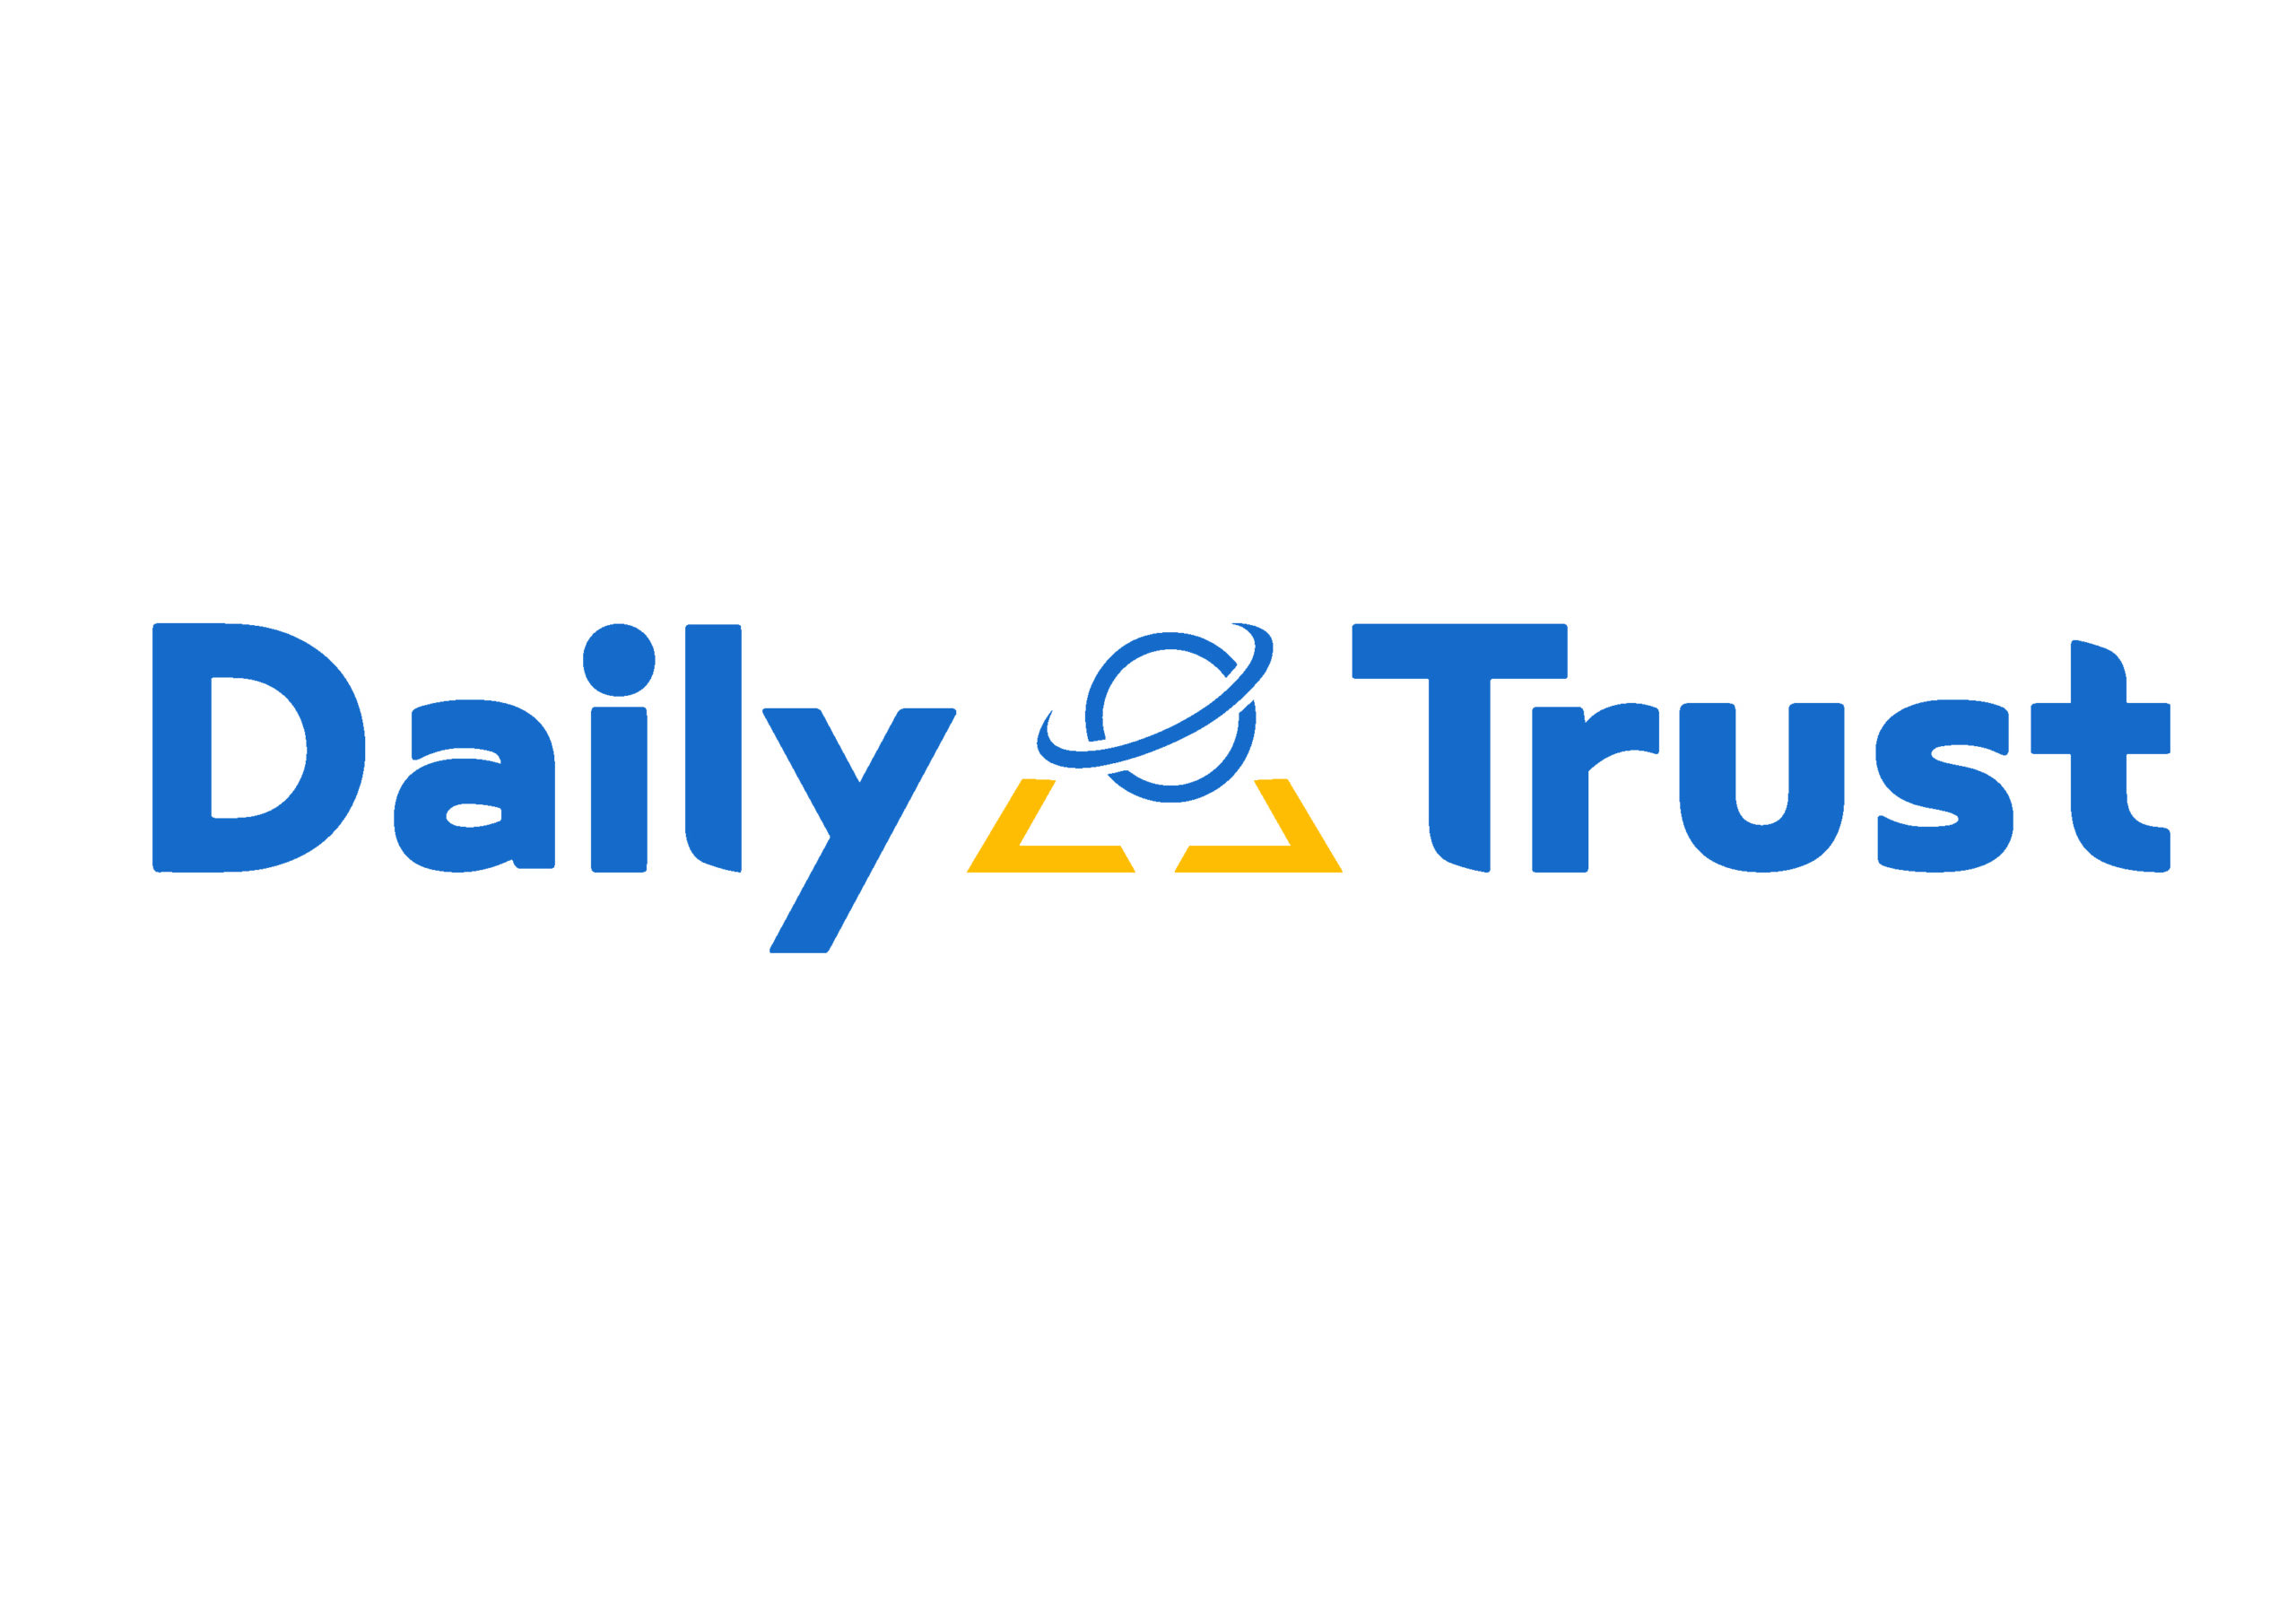 dailytrust.com